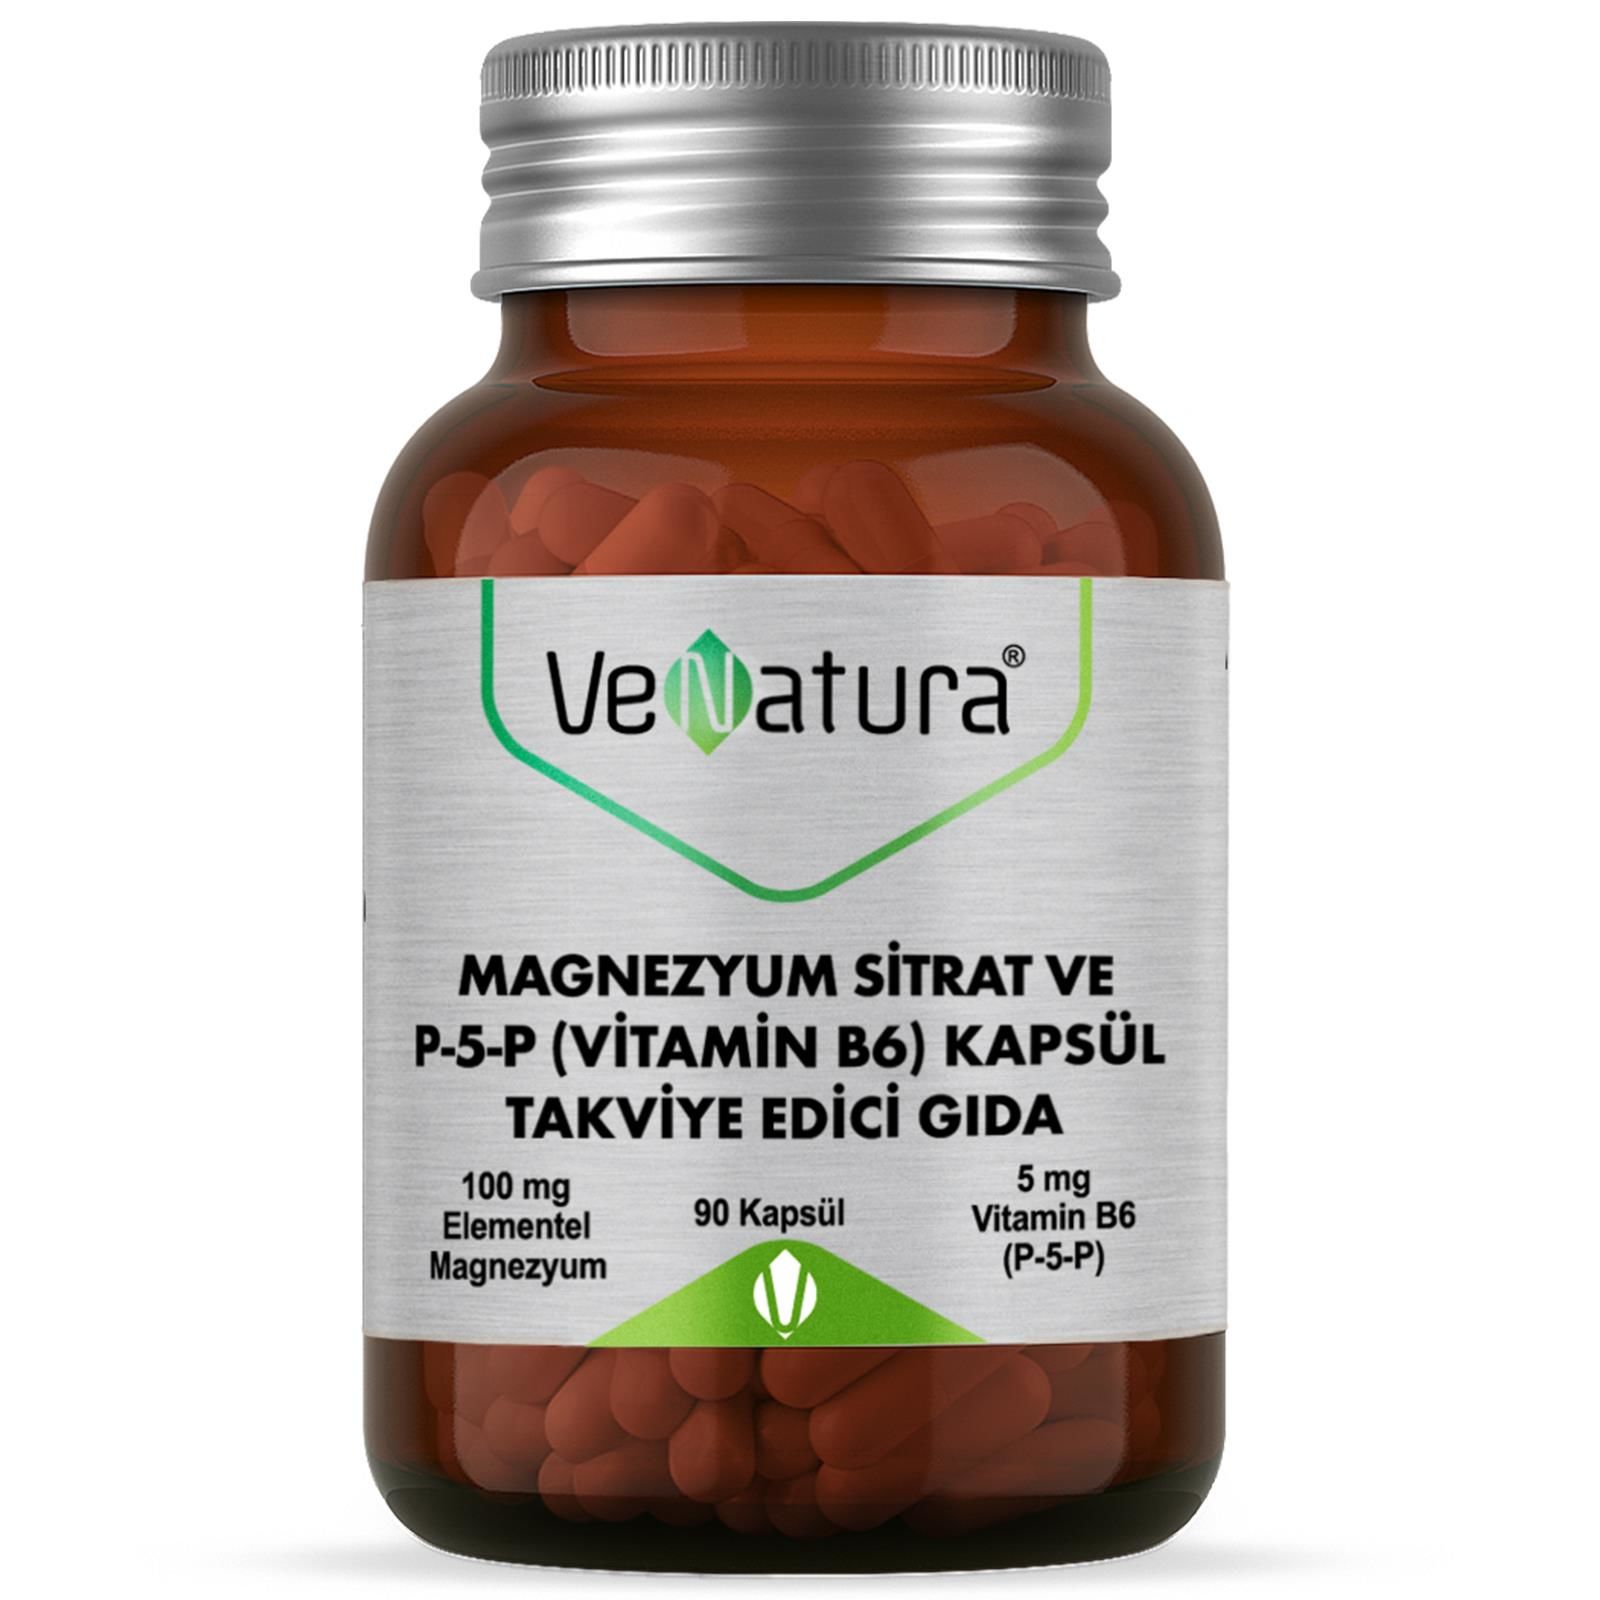 Venatura Magnezyum Sitrat Ve P-5-P Vitamin B6 90 Kapsül